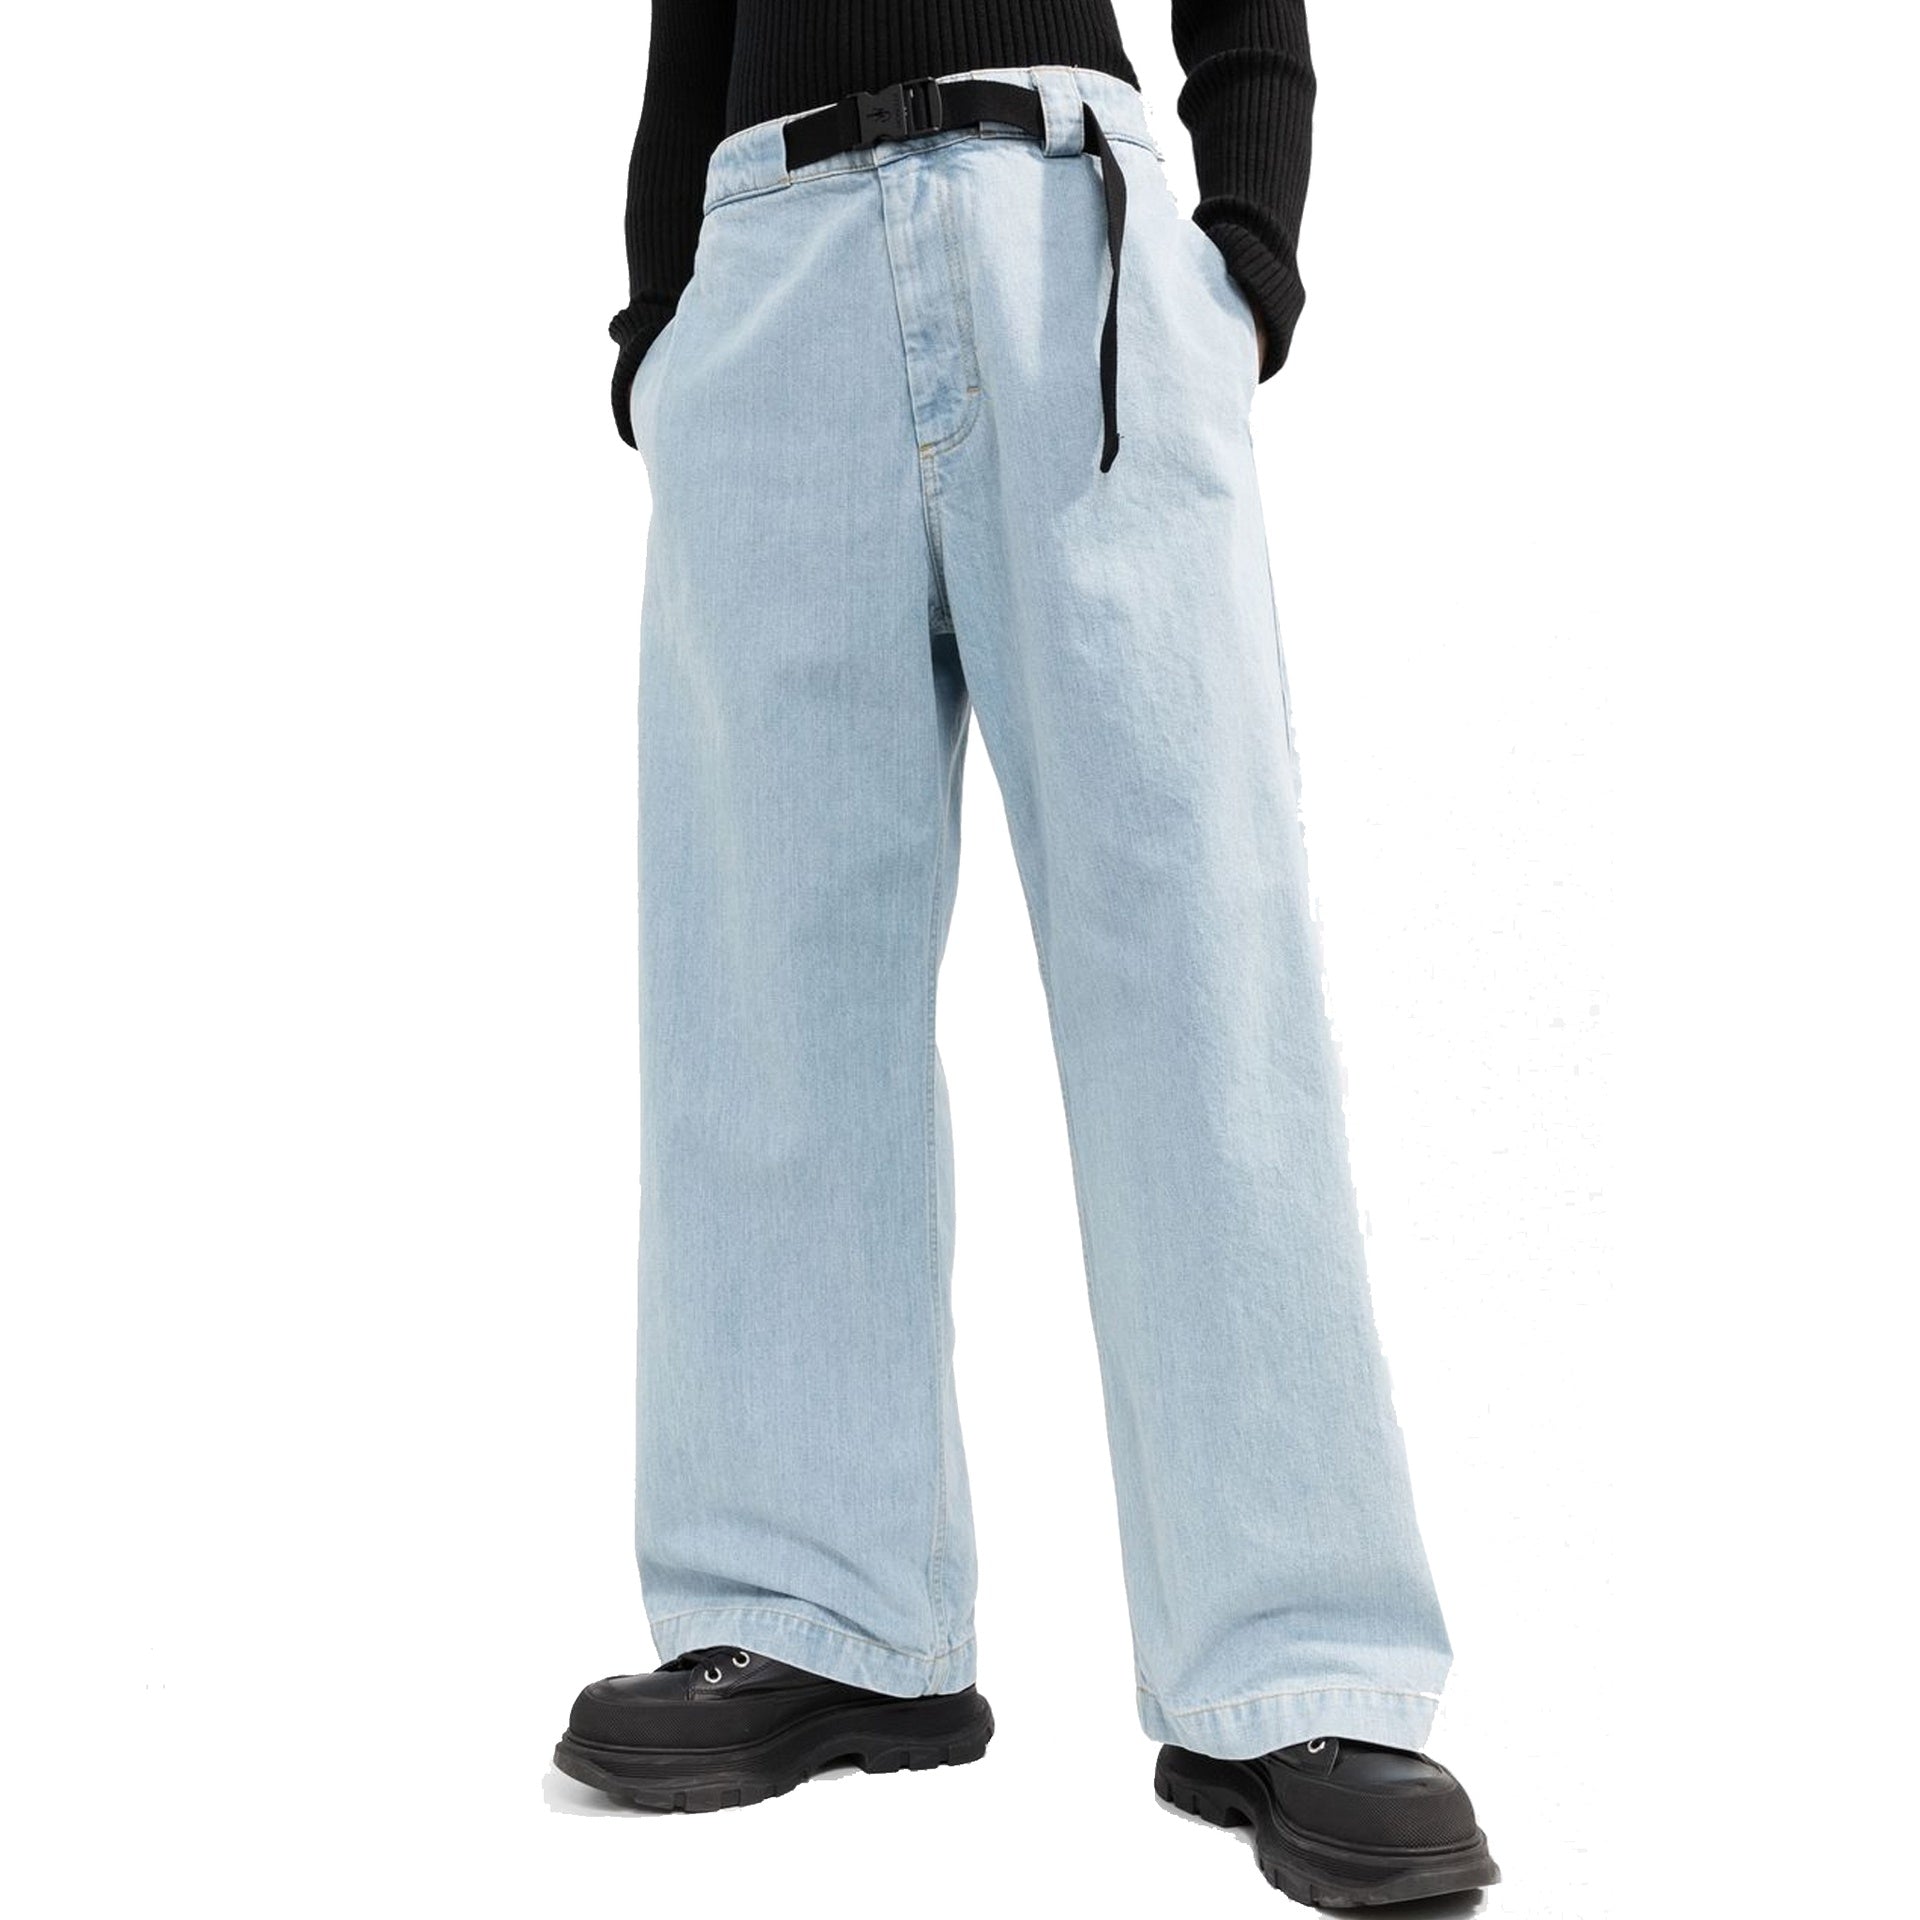 Moncler Belted Denim Jeans